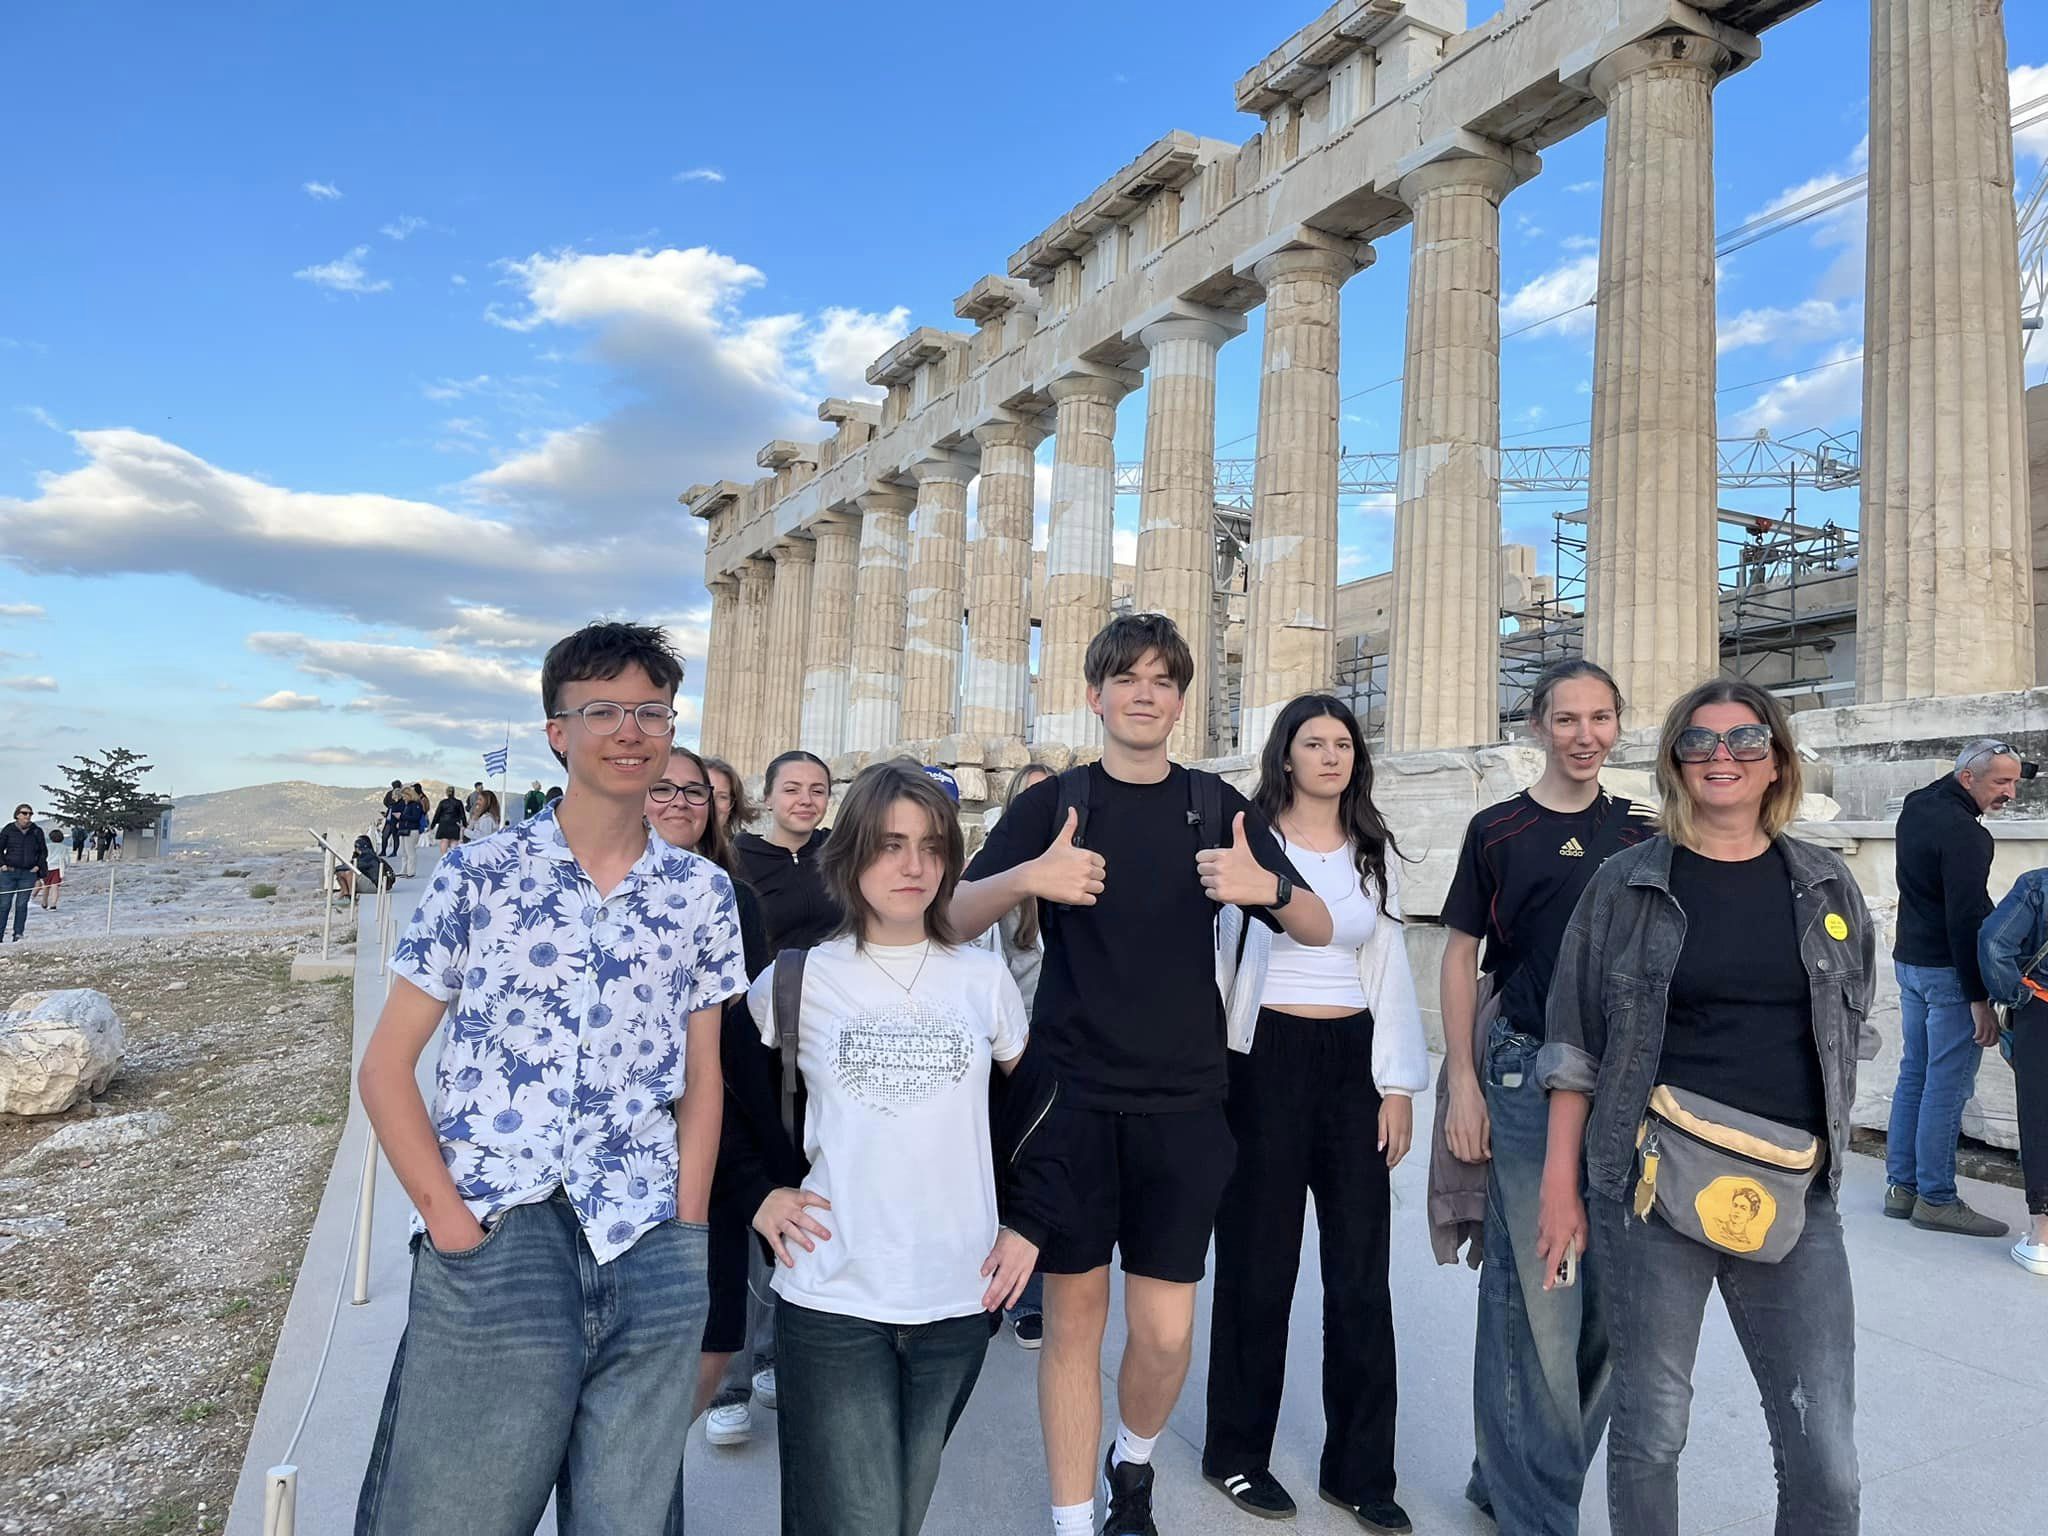 W dniach 14-21 kwietnia grupa 11 uczniów pod opieką p. Agnieszki Gemborys i p. Katarzyny Ścisłowicz spędziła wspaniałe chwile w Grecji na pięknej wyspie Sifnos. Wyjazd odbył się w ramach projektu Erasmus+ „Troskliwa Szkoła - Zjednoczeni w Różnorodności,”, zwiedzanie greckich zabytków